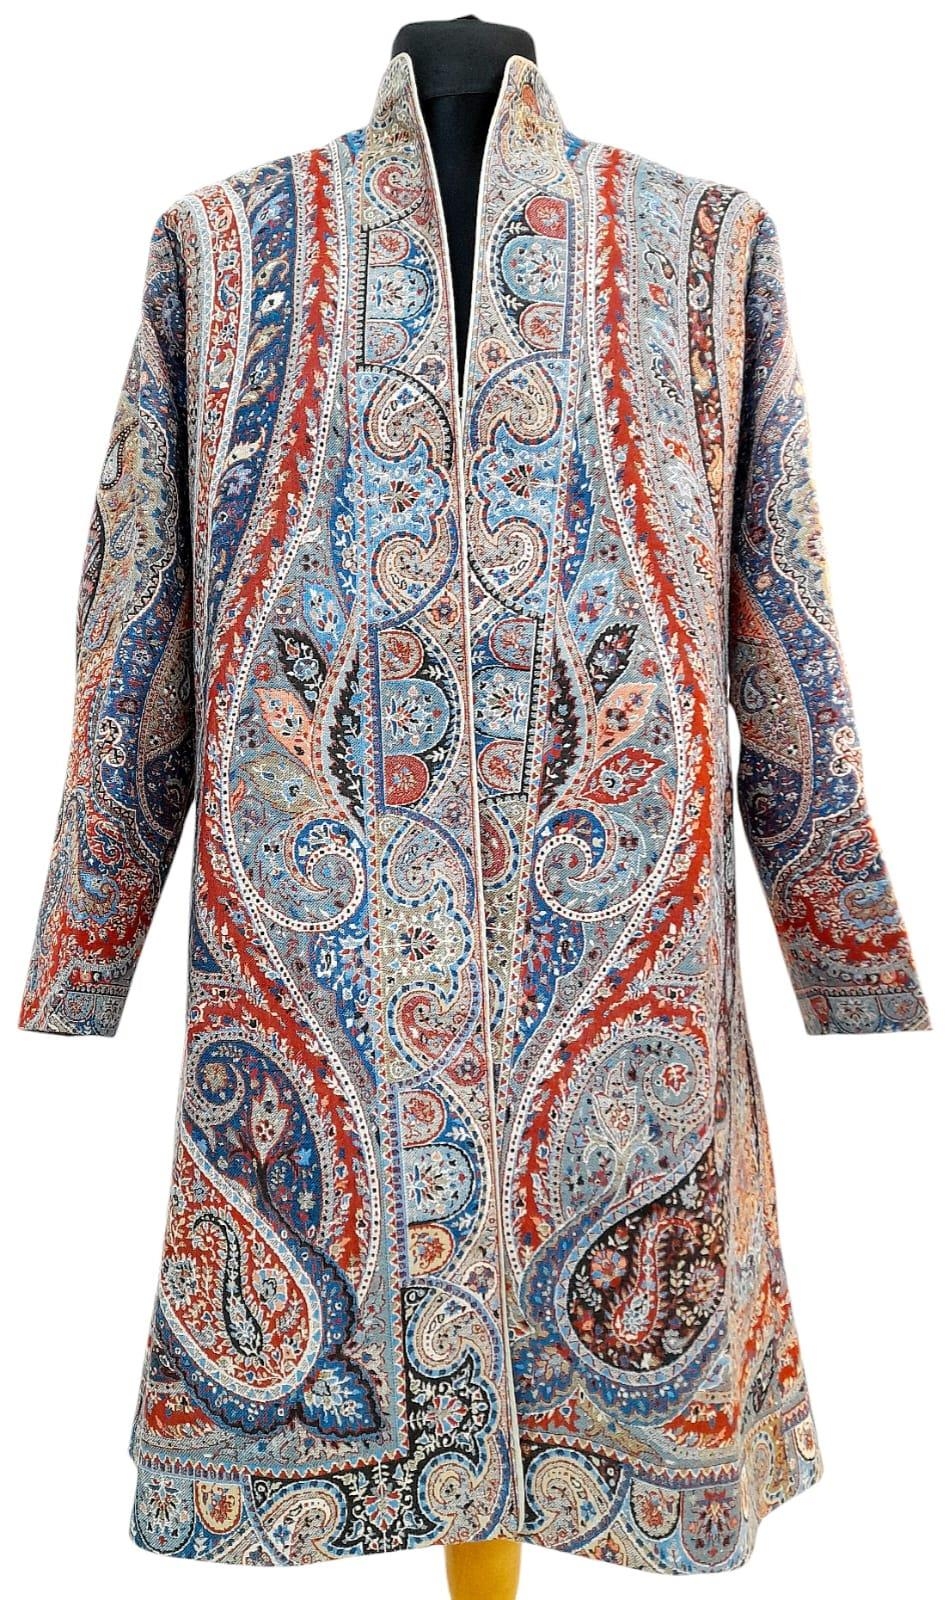 A Jamawar Decorative Paisley Coat. Size 44.